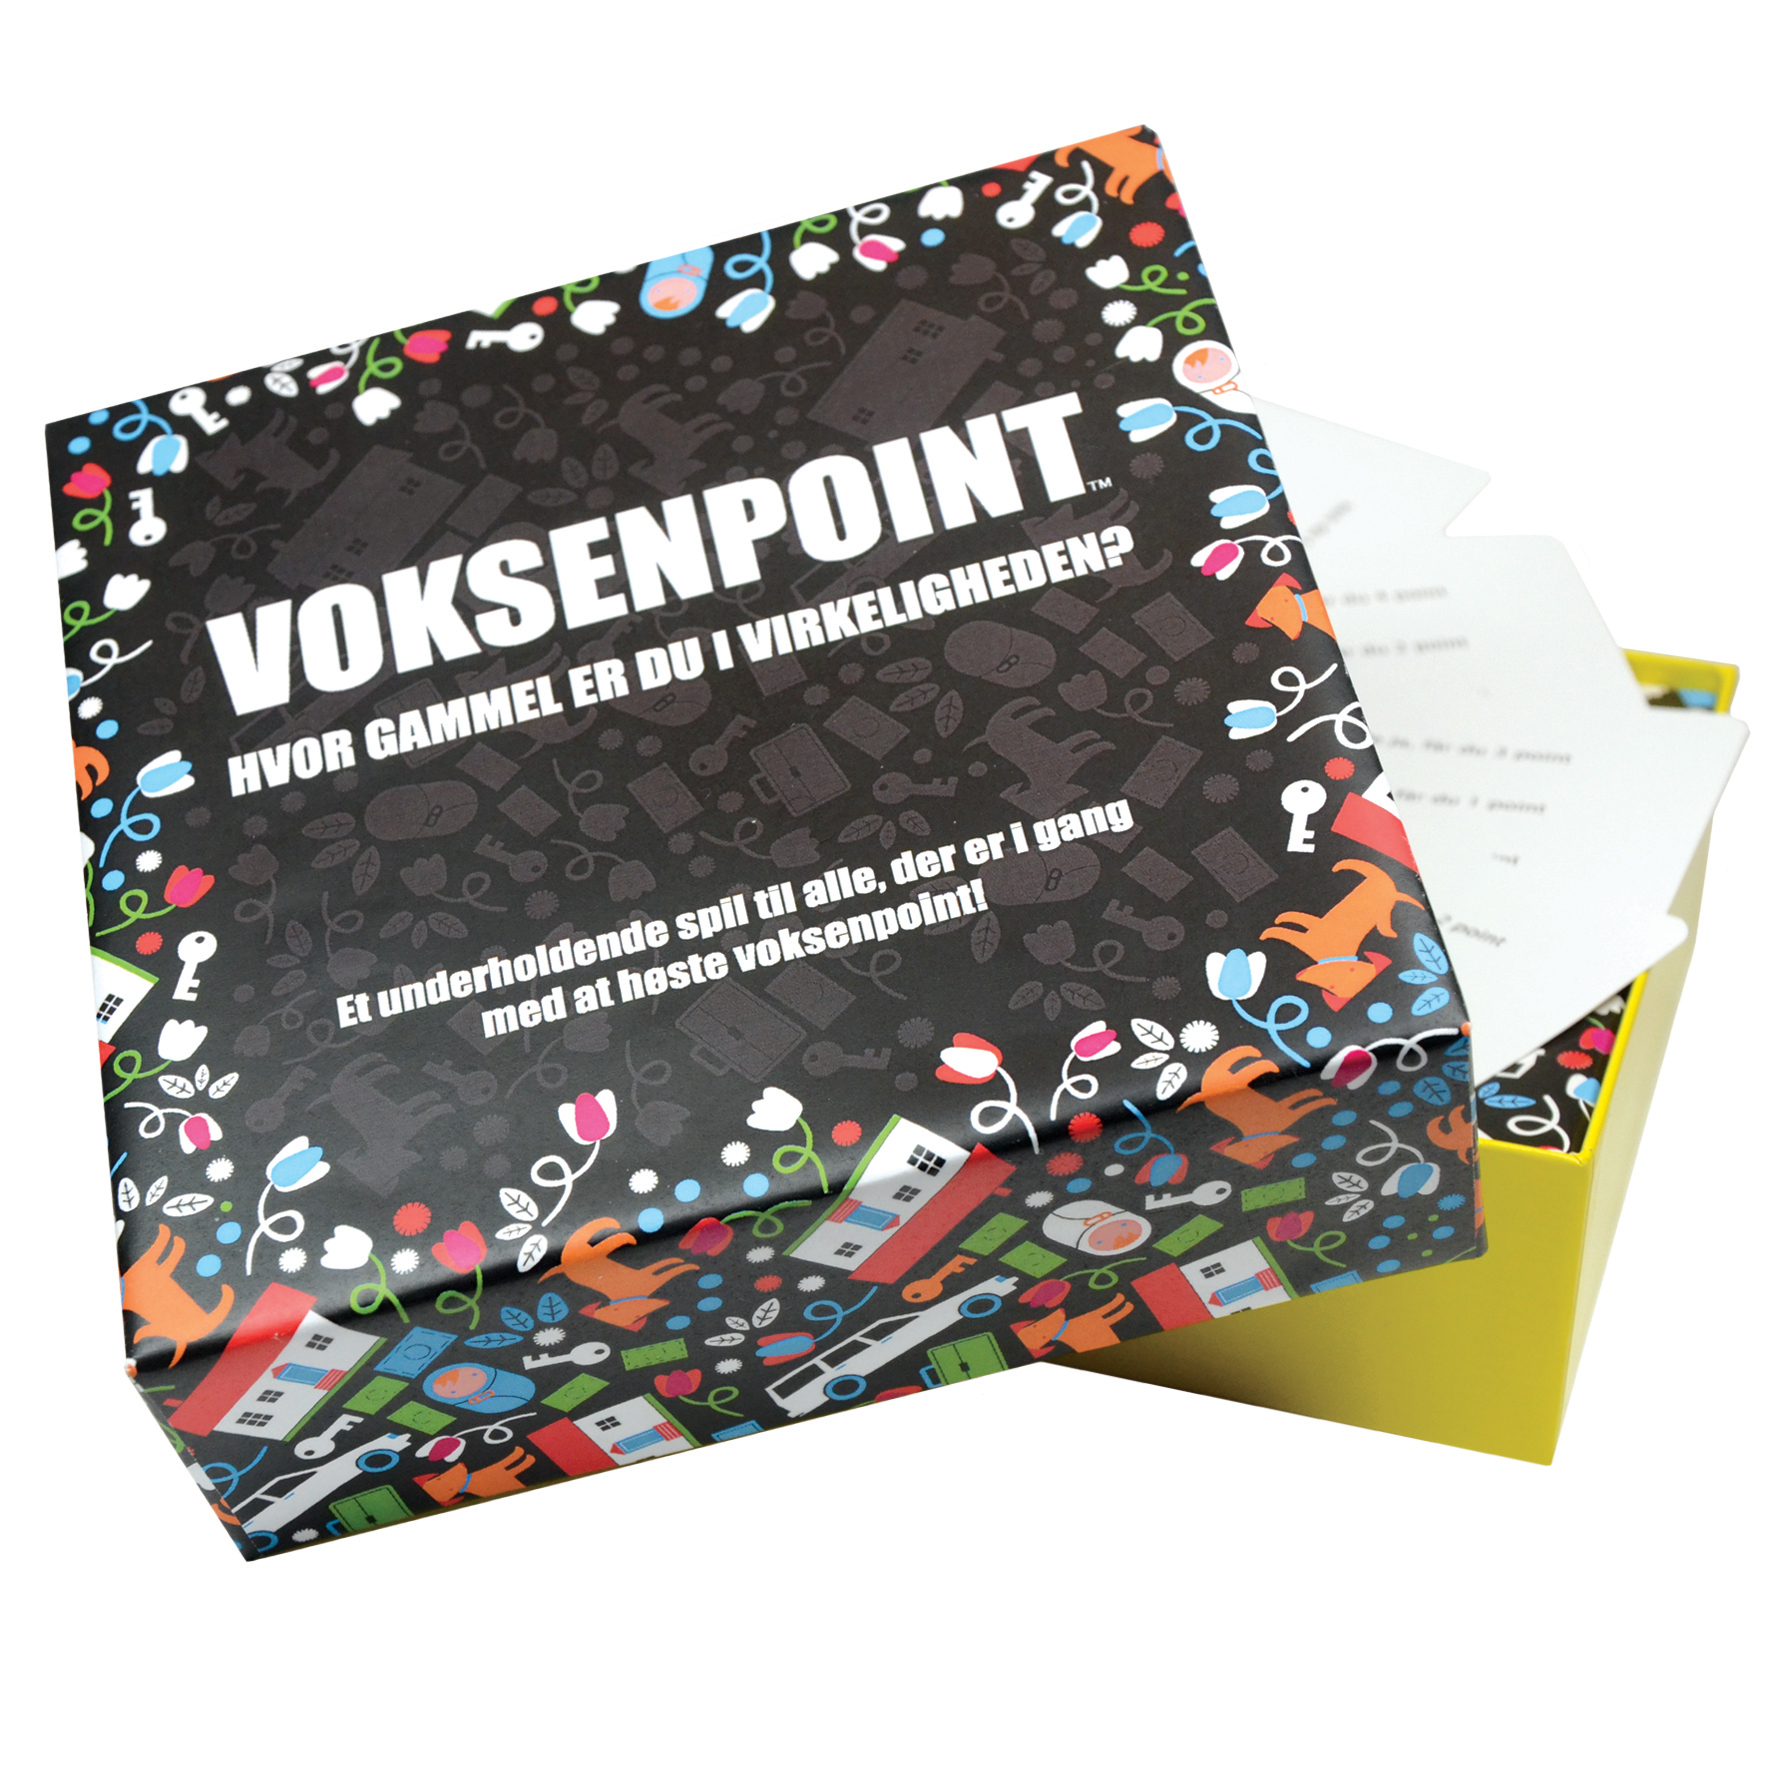 Køb Voksenpoint spil - Pris 151.00 kr.